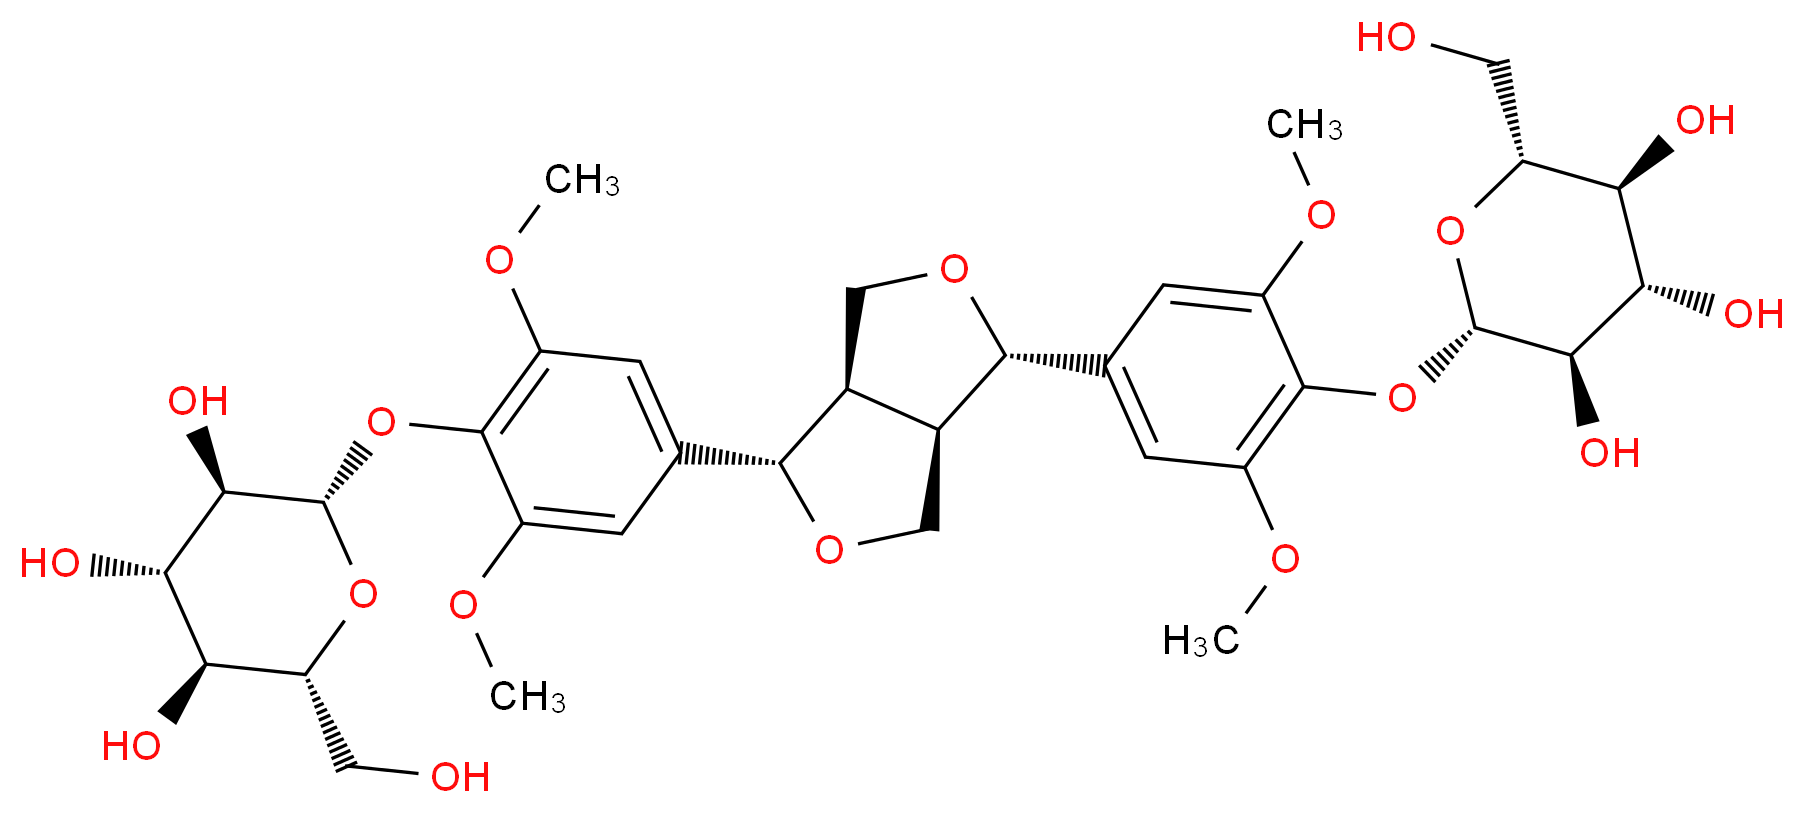 573-44-4 molecular structure